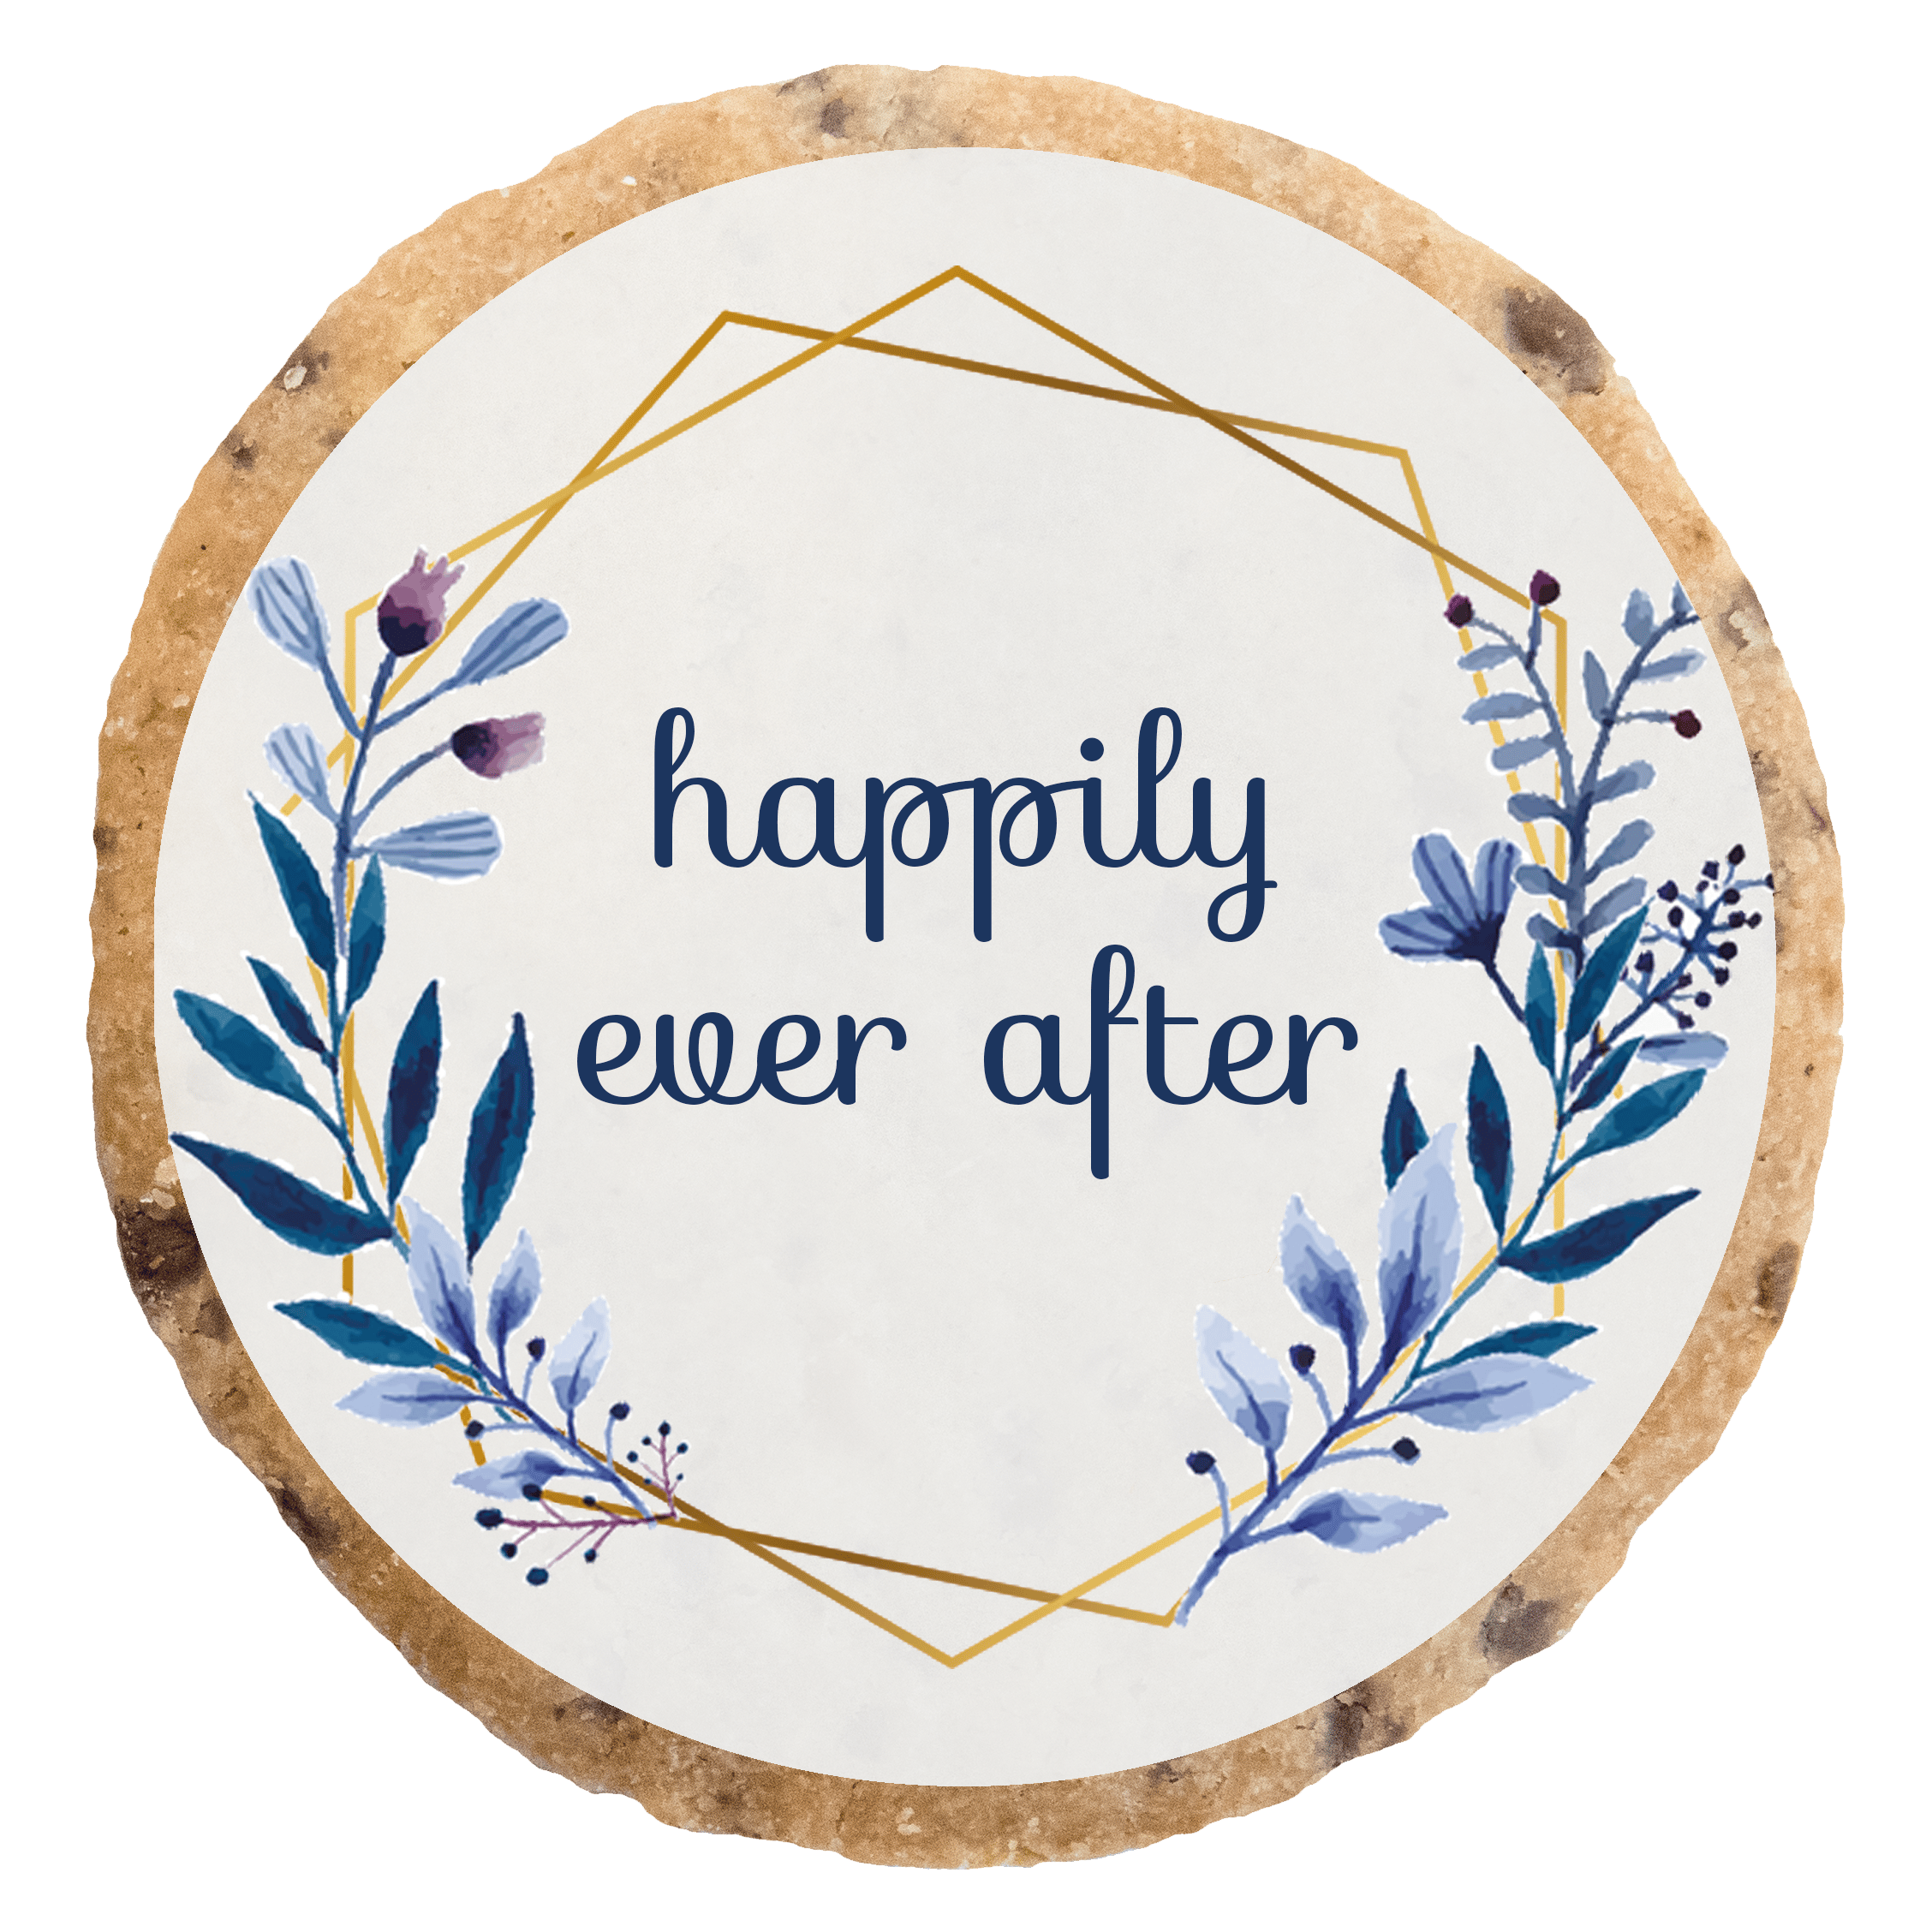 "Happily ever after" MotivKEKS